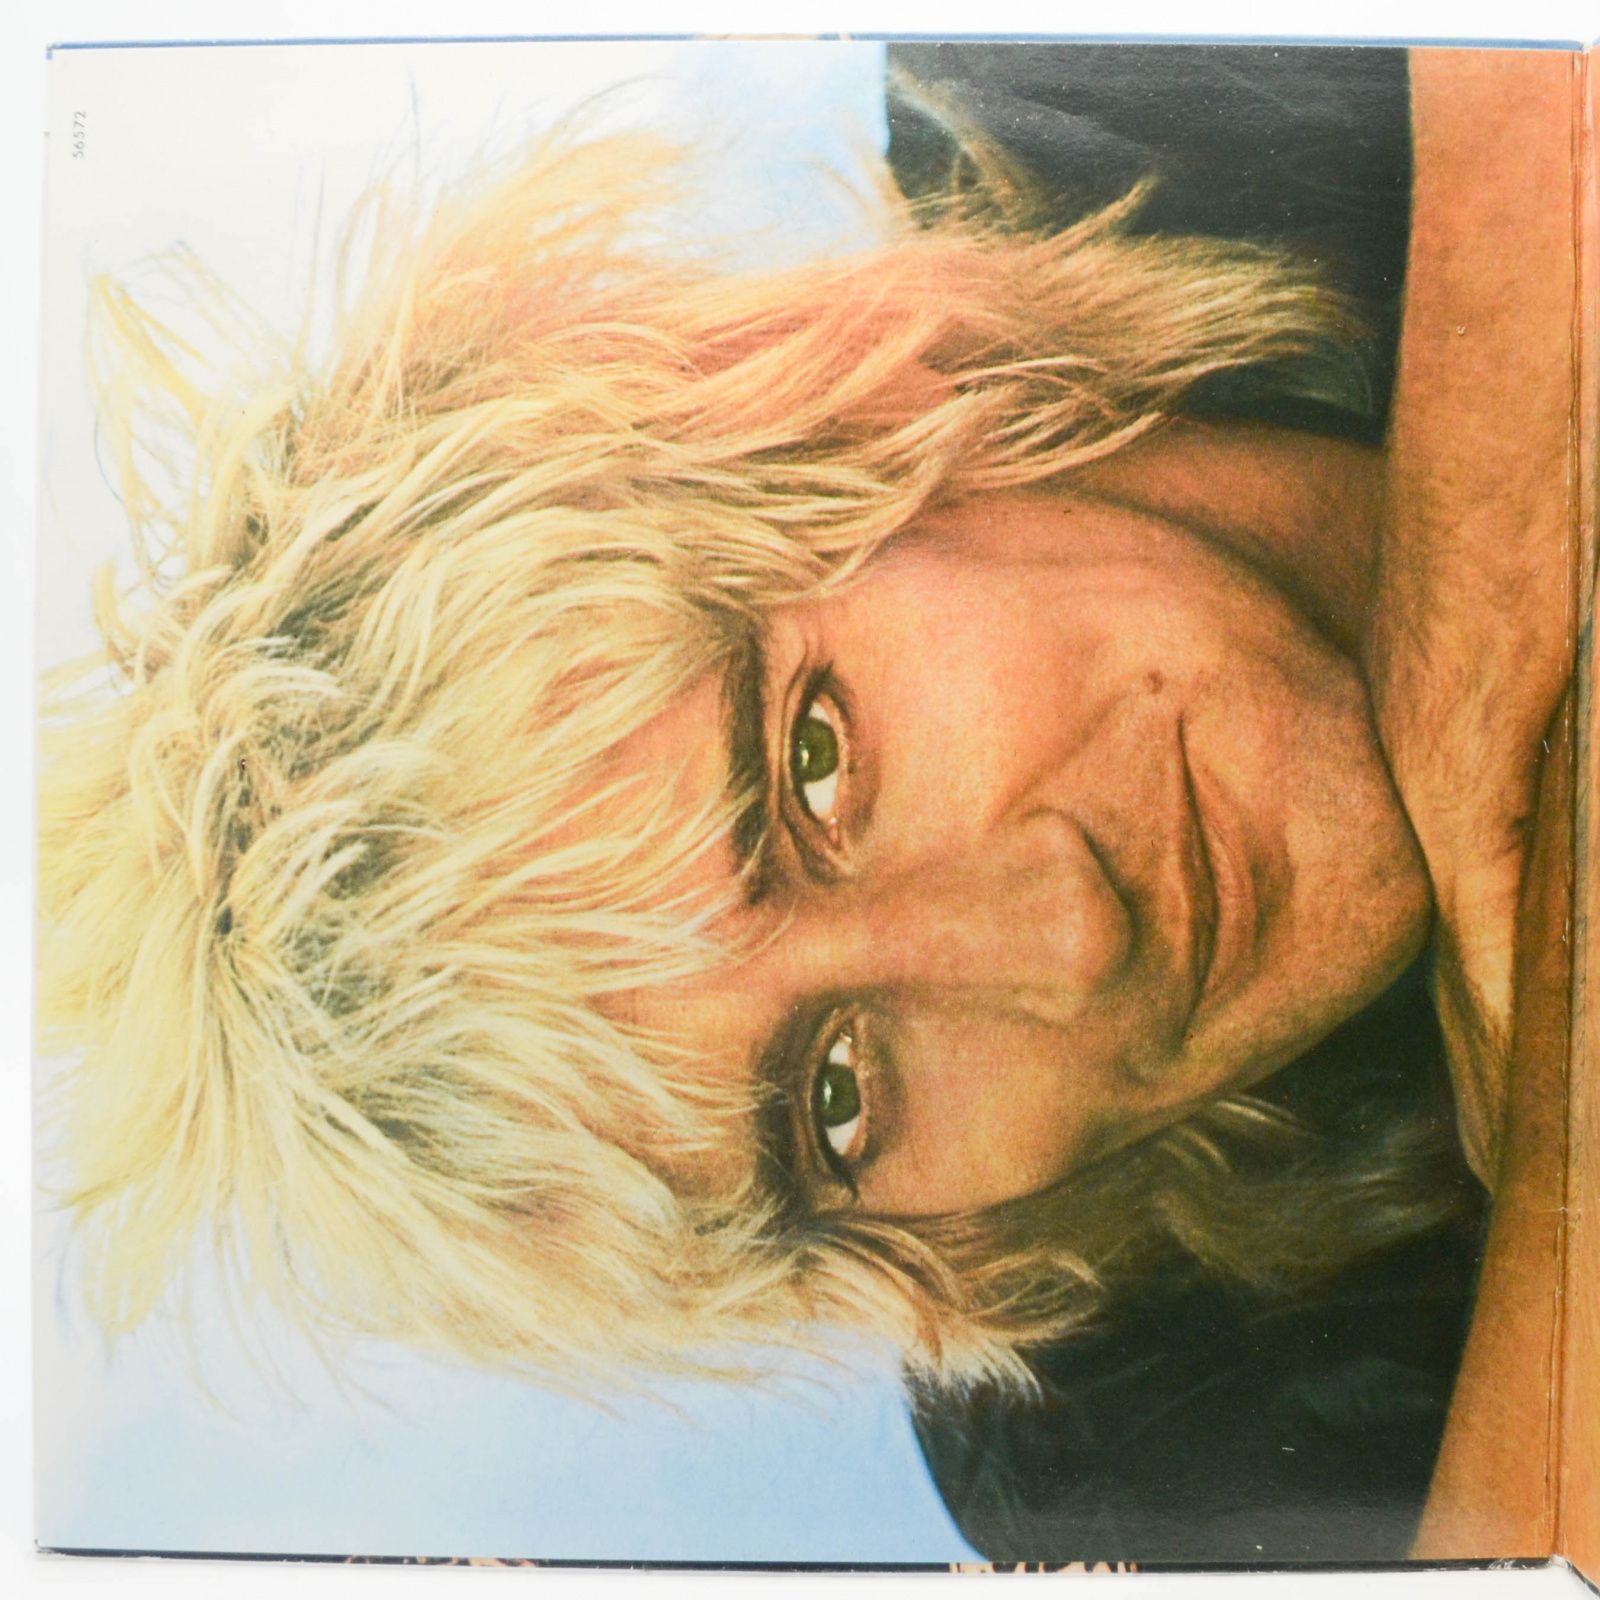 Rod Stewart — Blondes Have More Fun, 1978